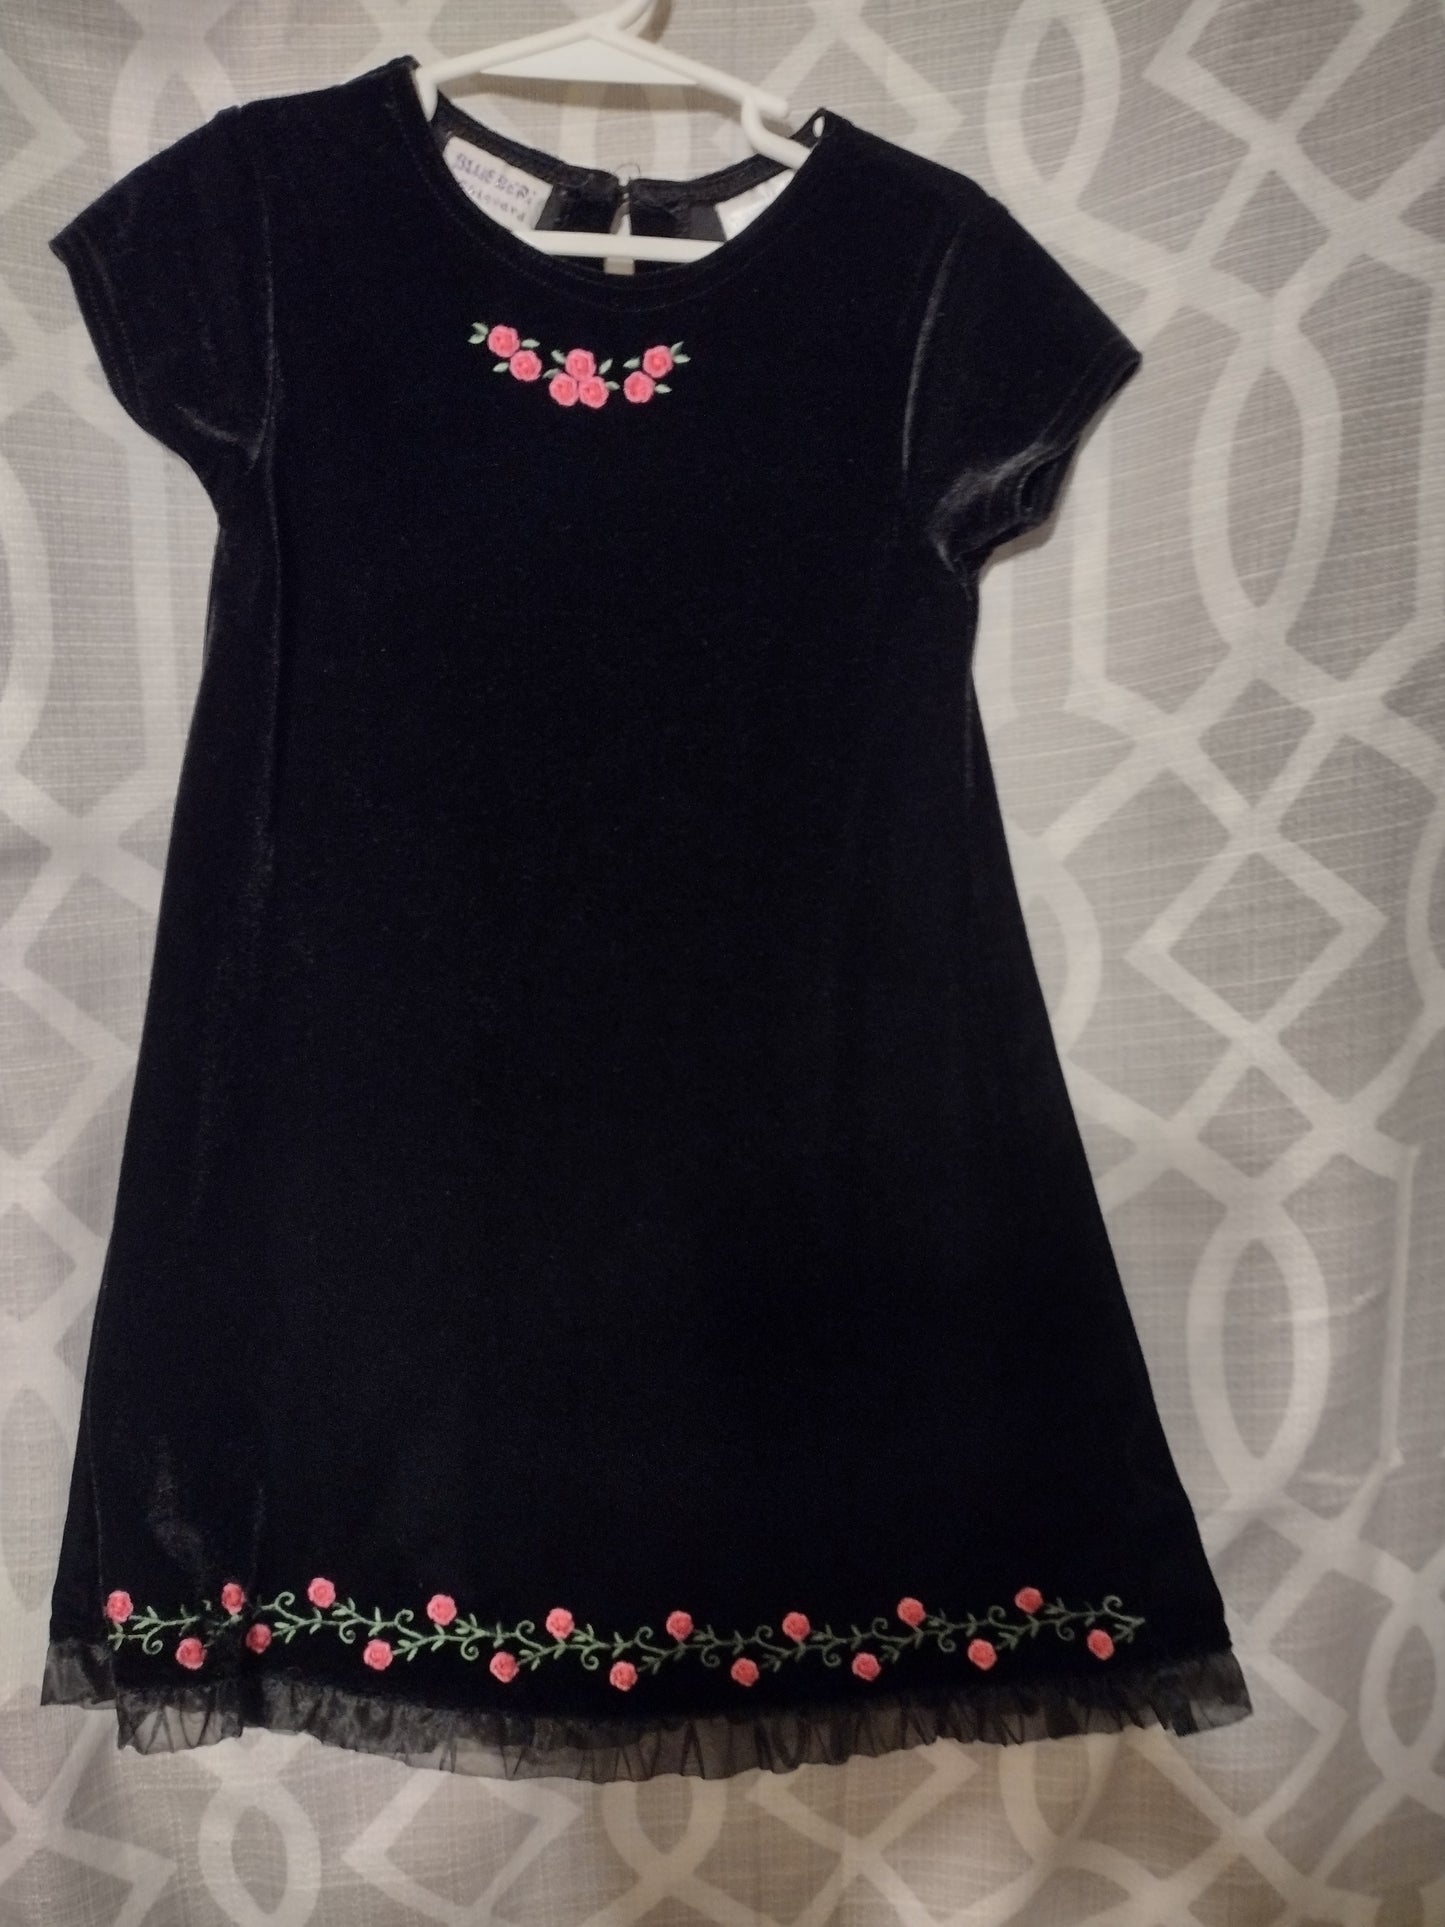 Toddler girl black velvet dress size 5